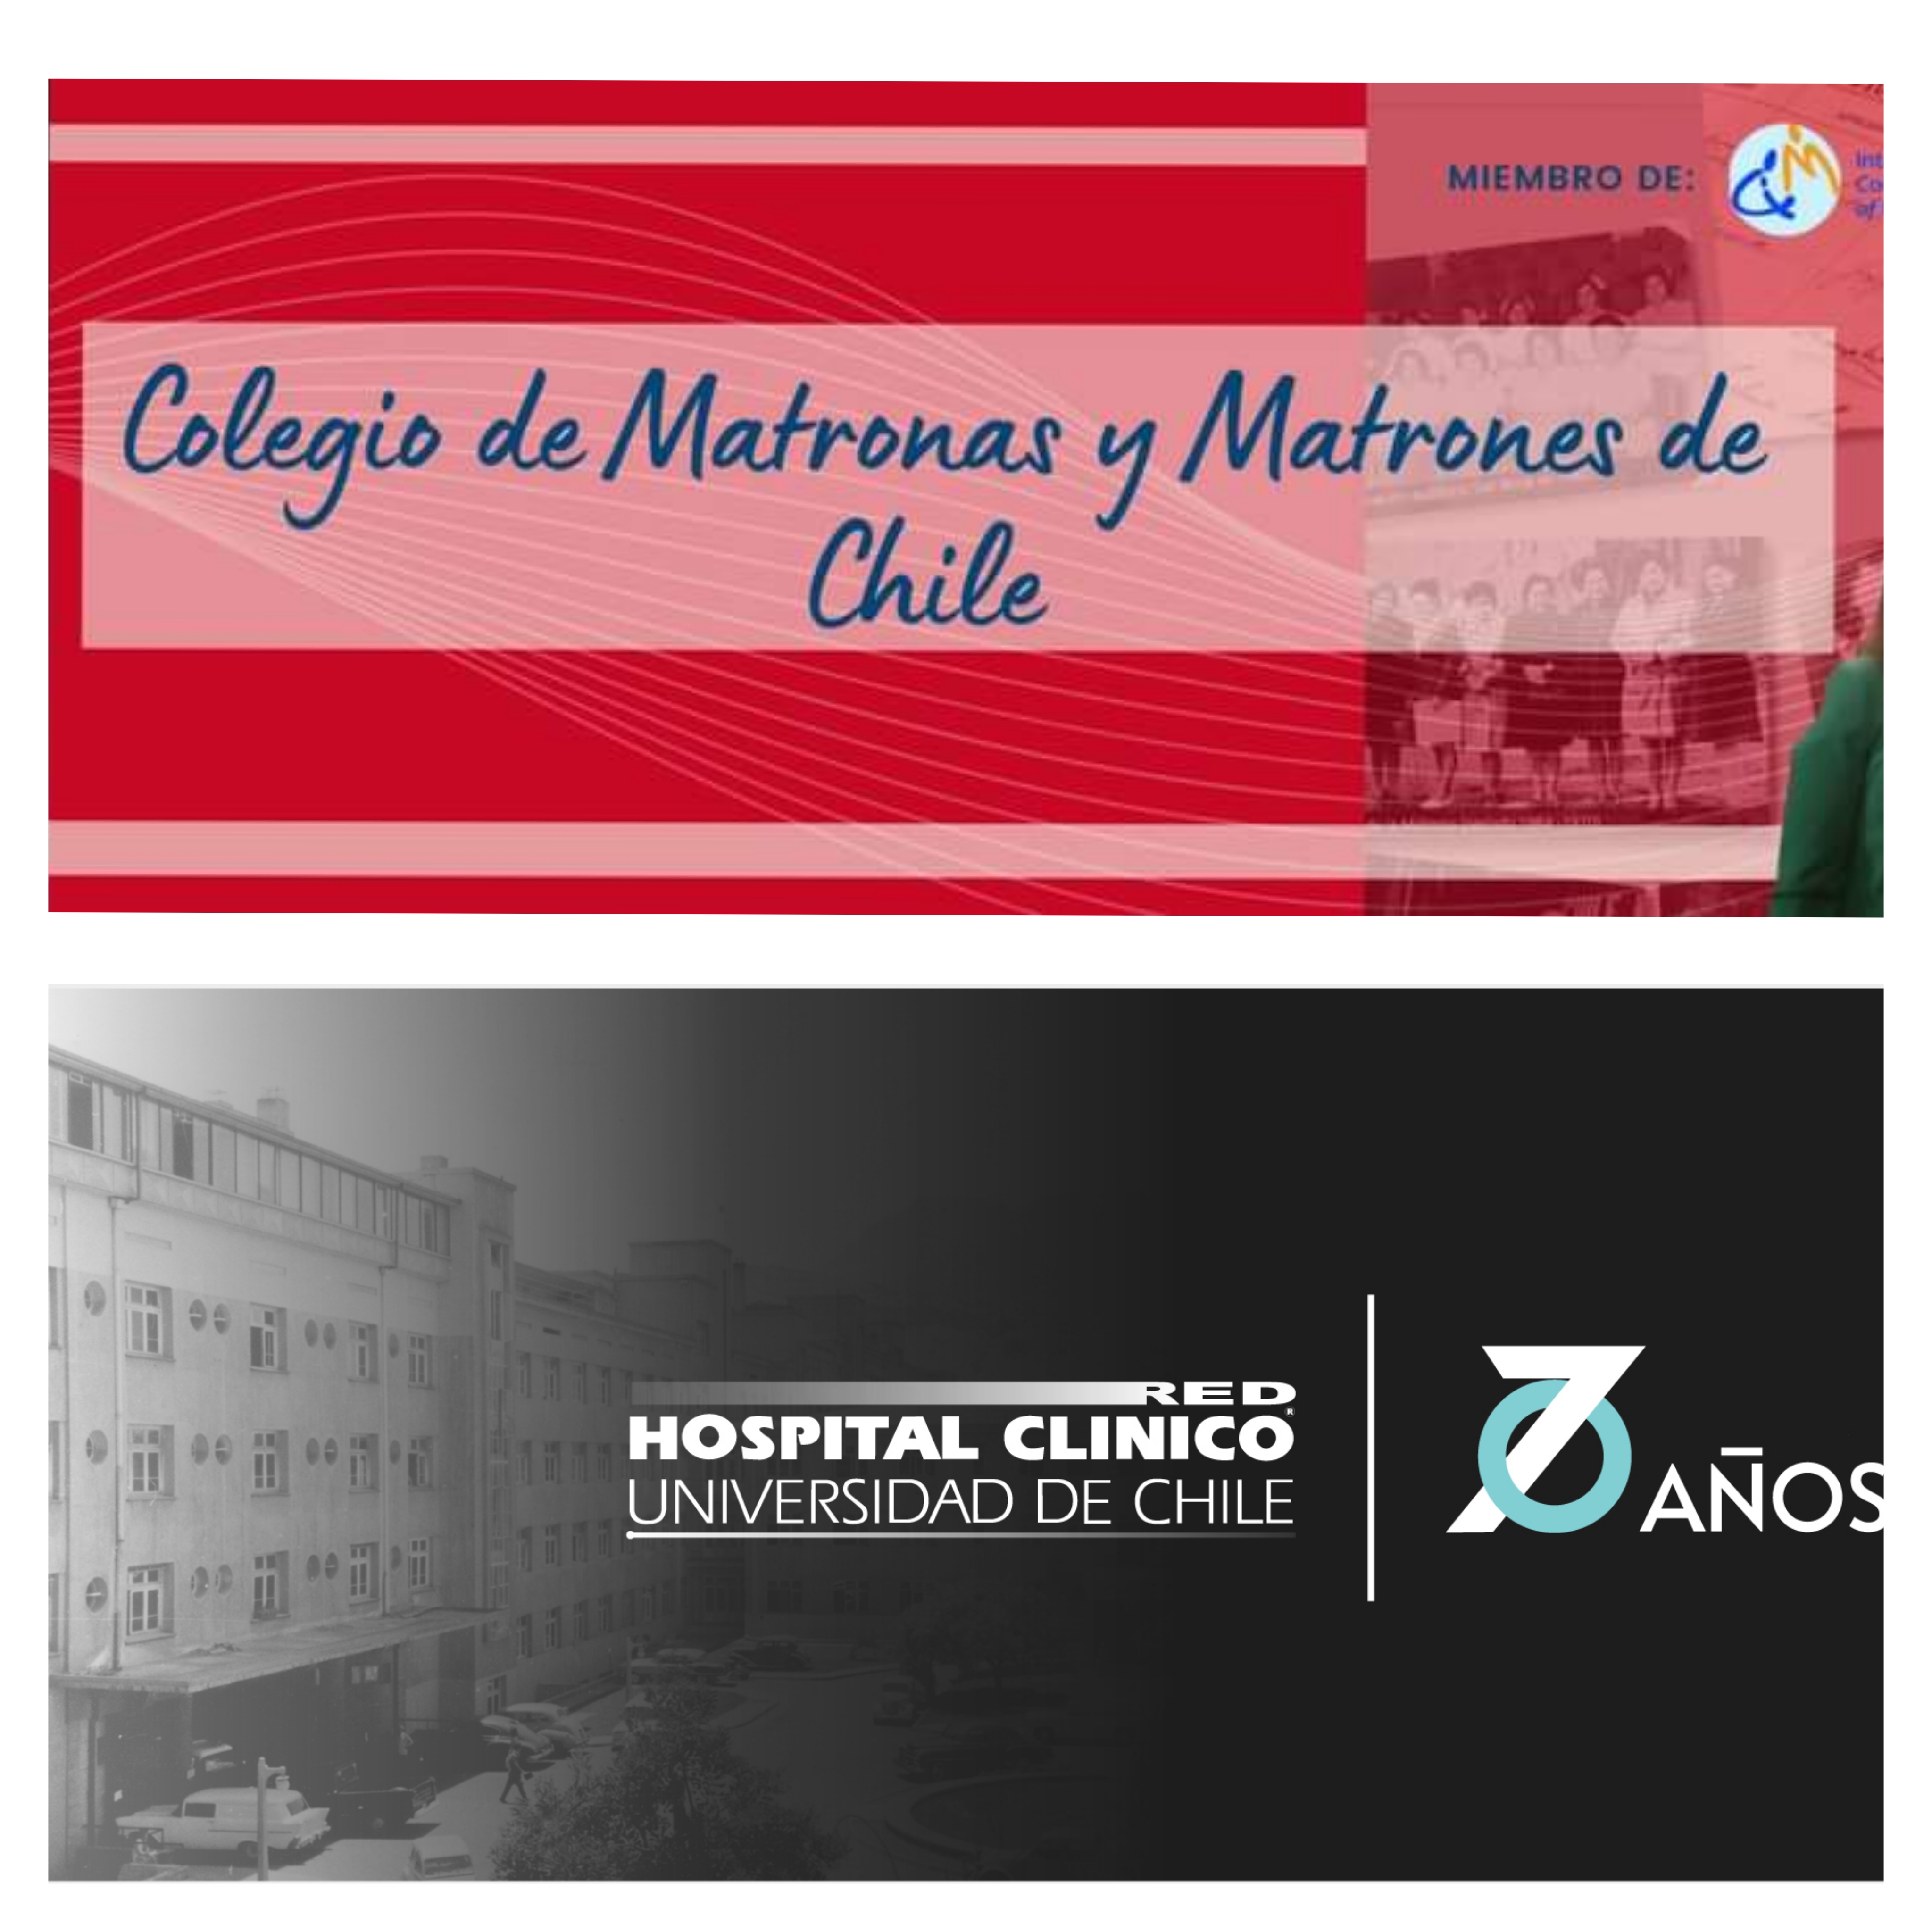 Convenio de Cooperación Colegio de Matronas y Matrones de Chile y Fundación HCUCH, Universidad de Chile